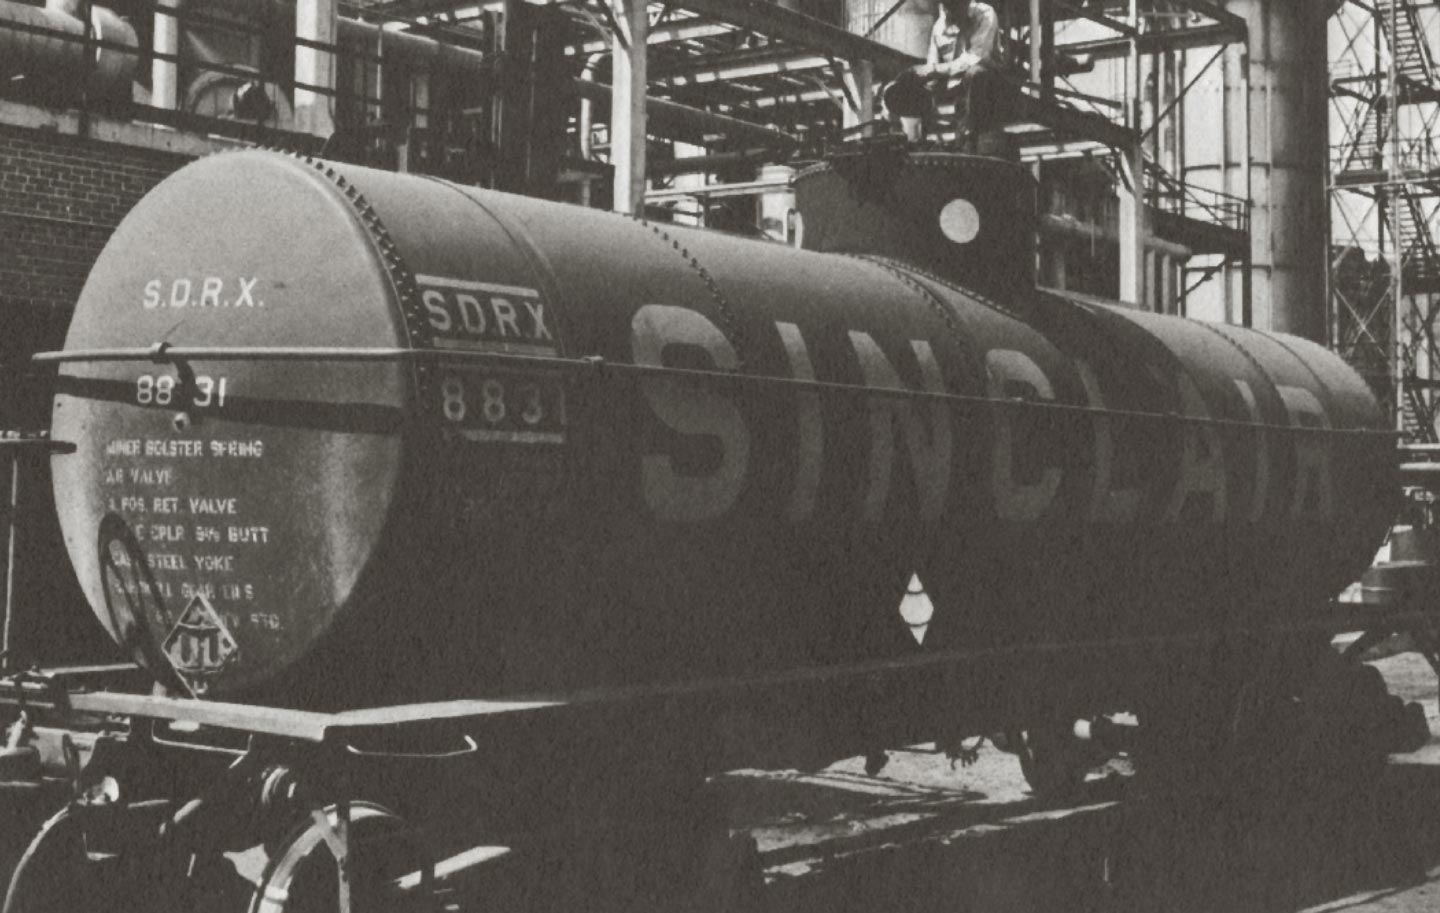 Sinclair oil tank train car